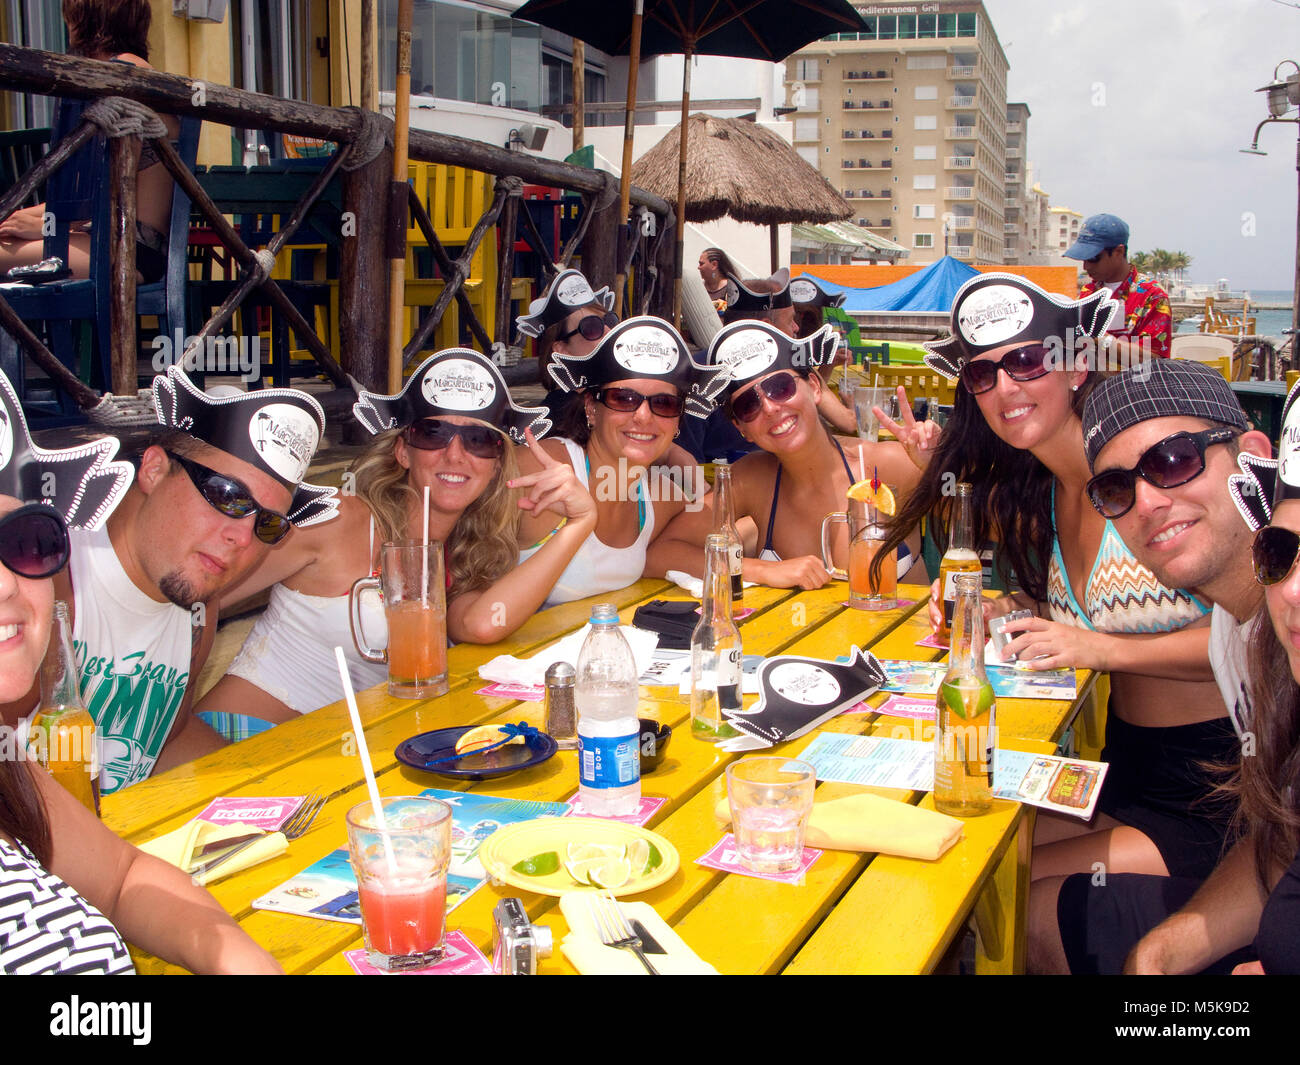 Les jeunes touristes avec bouchons pirate célèbre au bar de plage, les plongeurs bar Margaritaville, San Miguel, Cozumel, Mexique, Caraïbes Banque D'Images